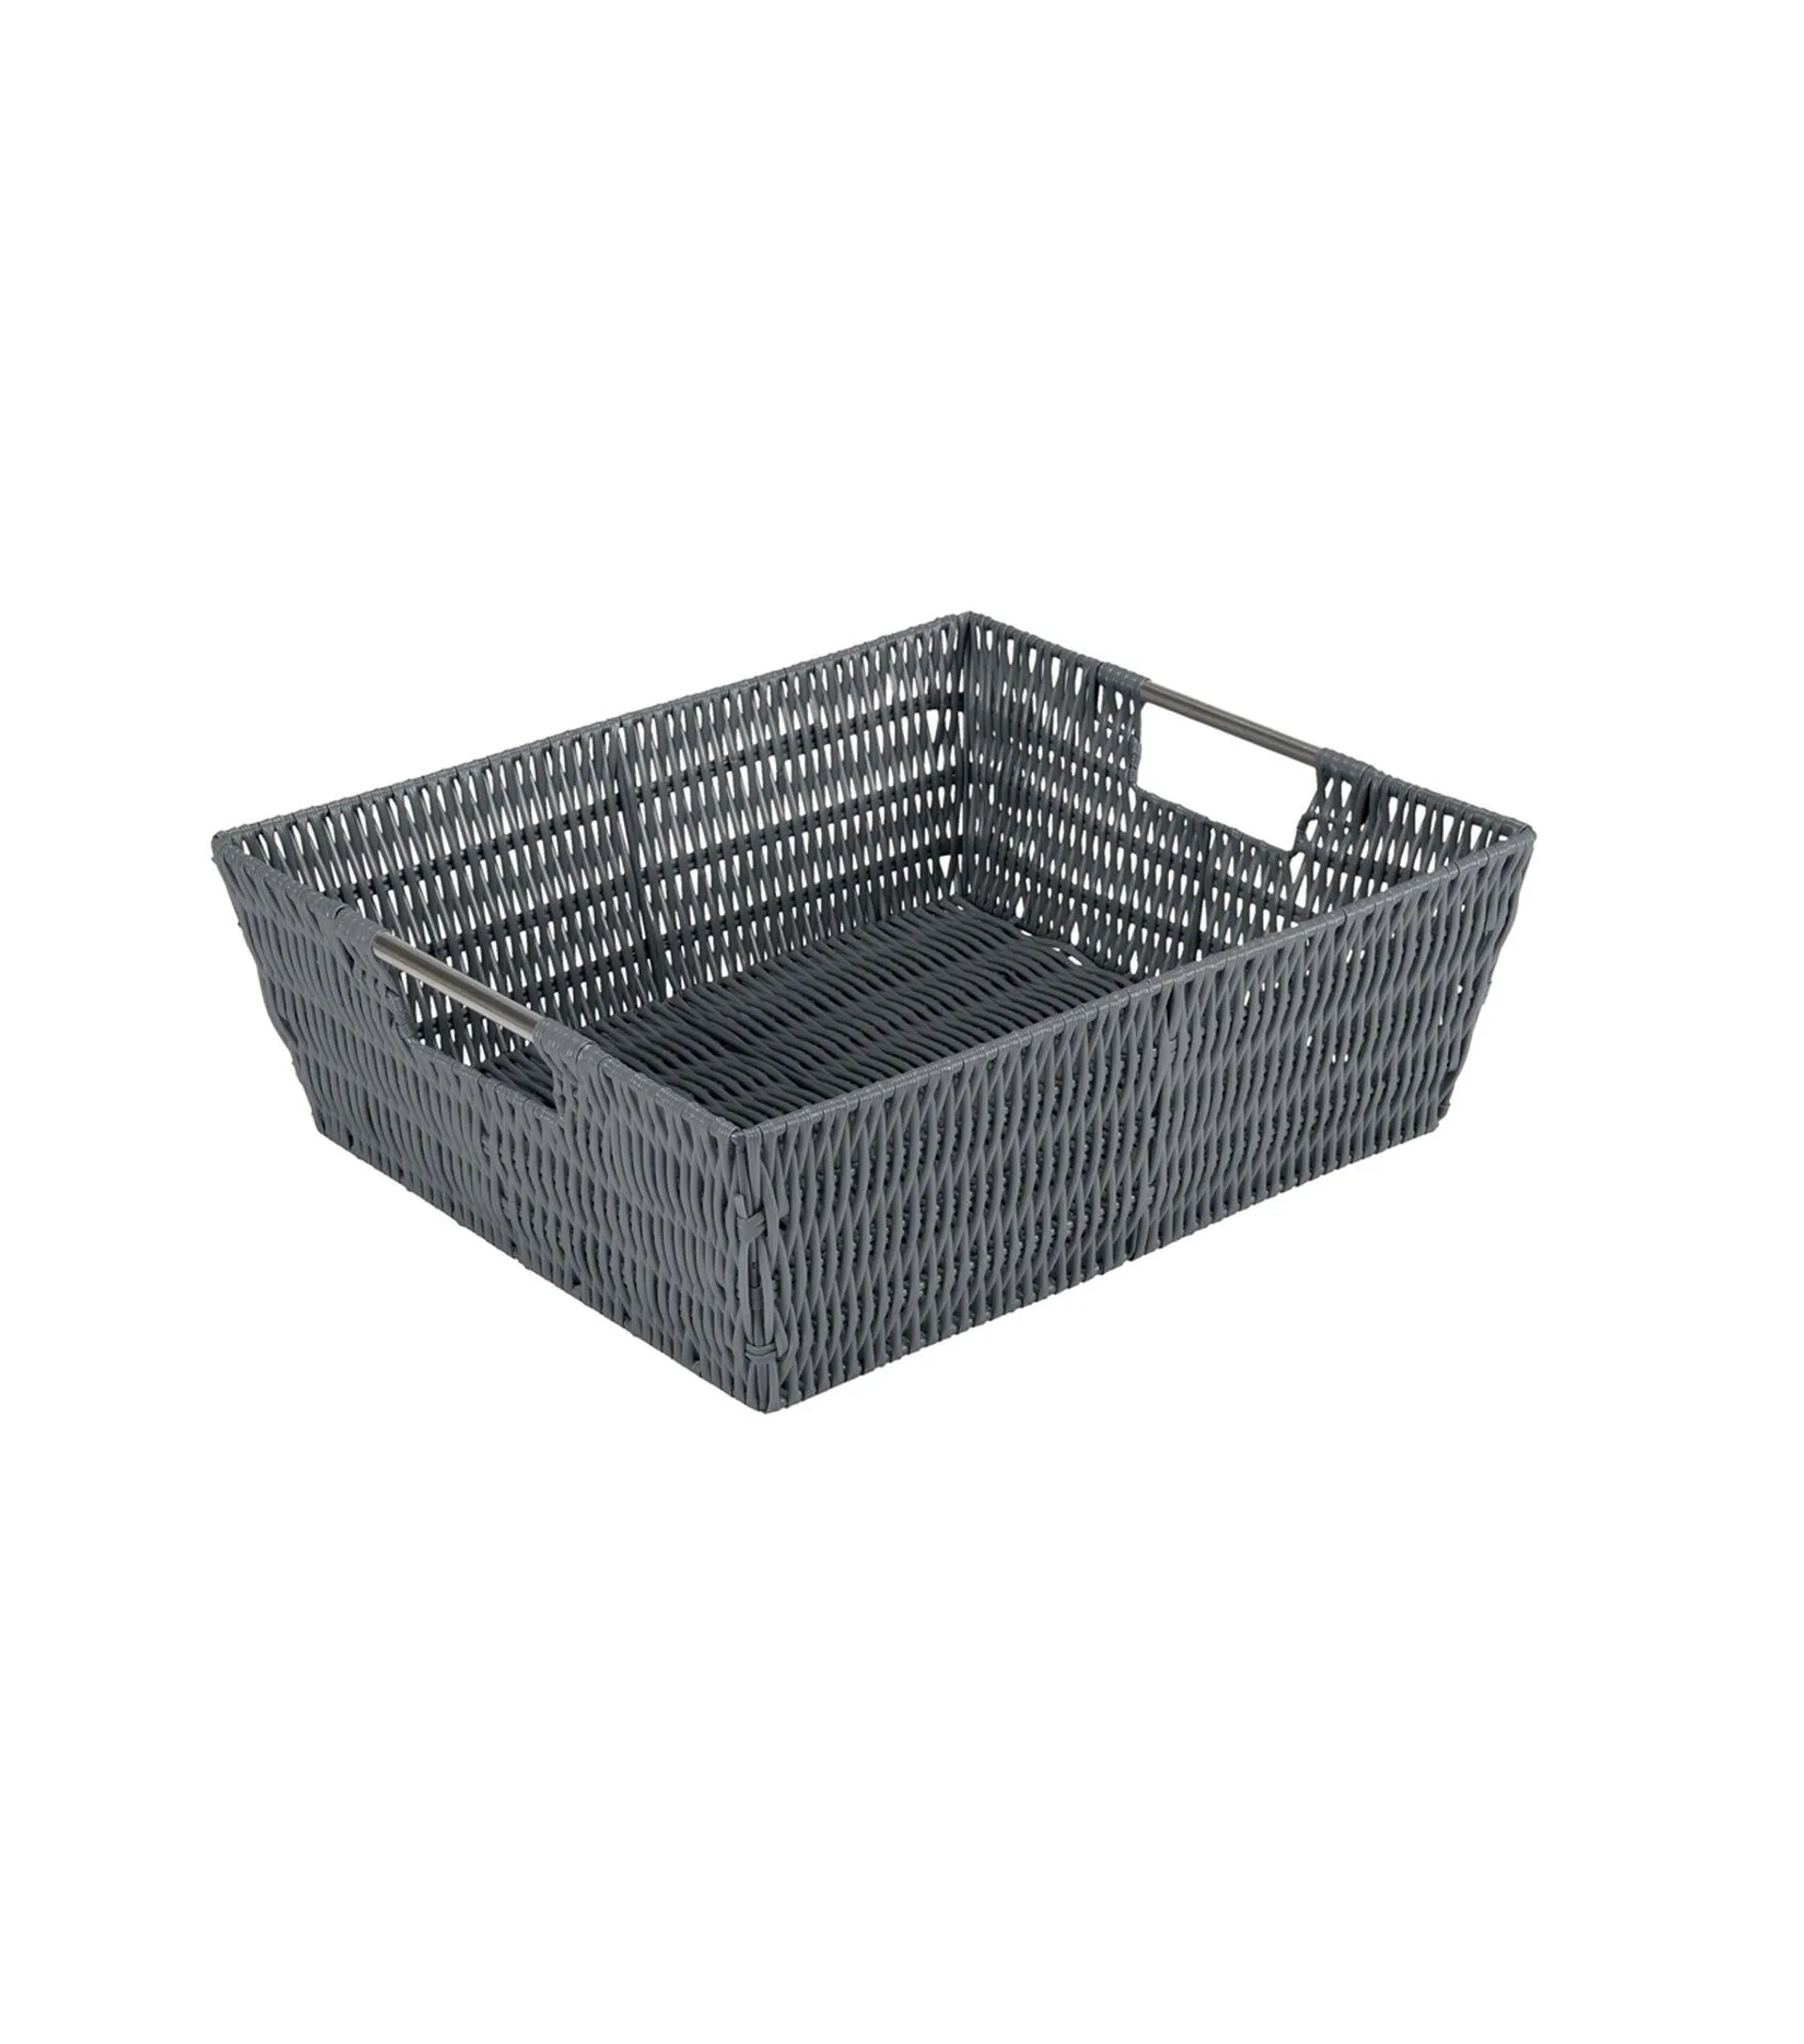 Simplify 12" x 10" Rattan Shelf Storage Basket